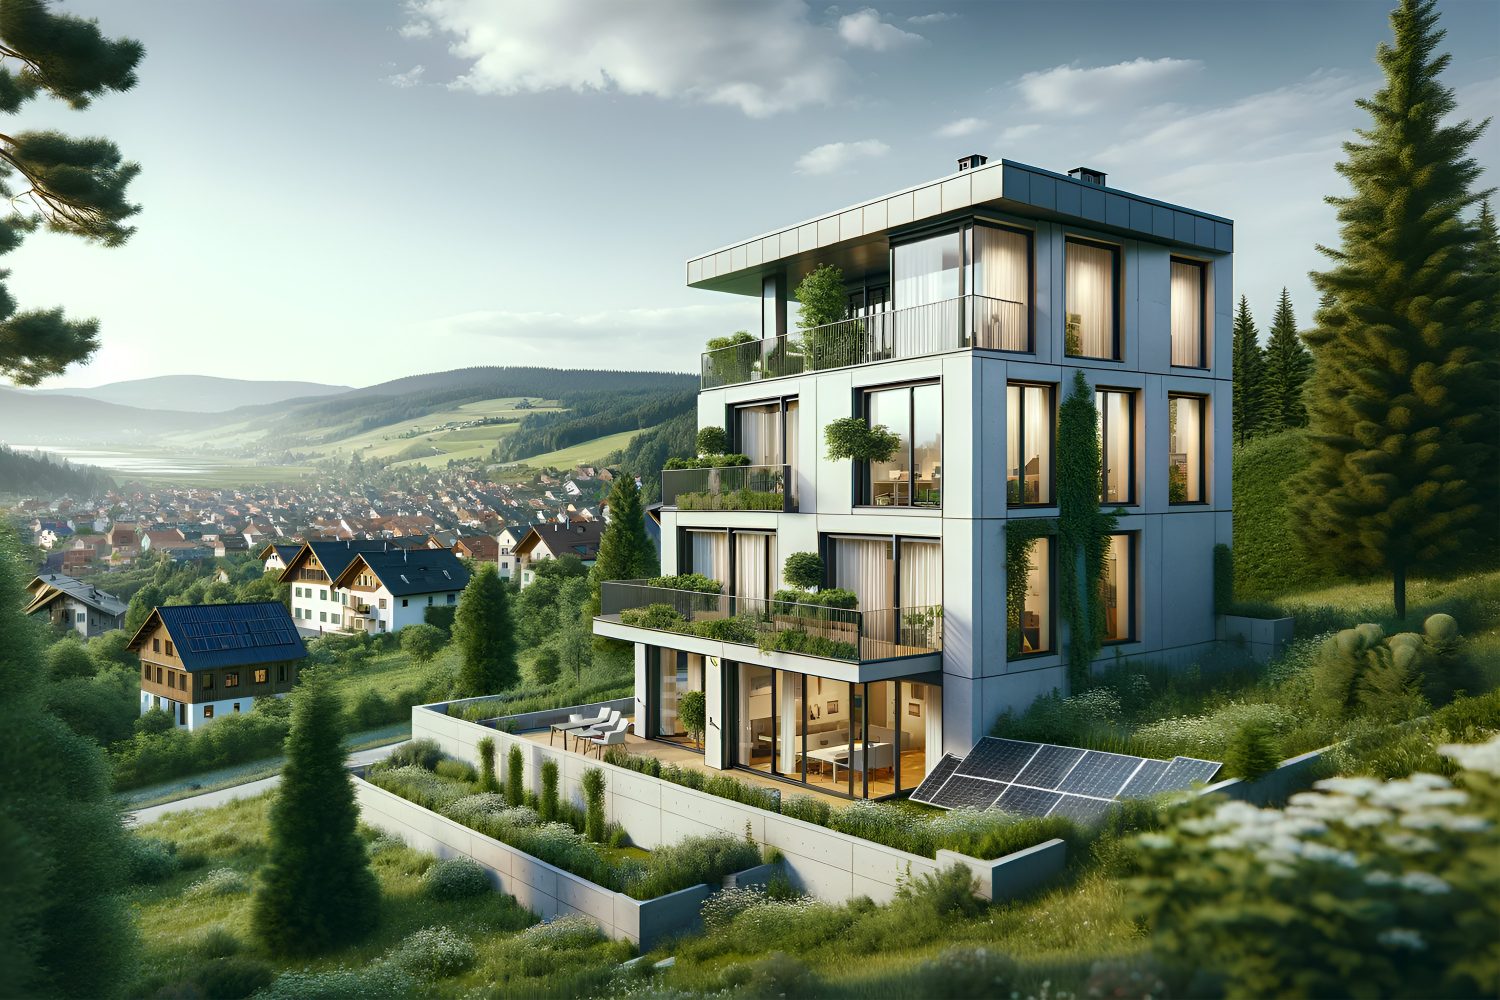 KS Immobilien Projekt GmbH | Immobilien Planung & Entwicklung für die Regionen Oberfranken, fränkische Schweiz und das Fichtelgebirge